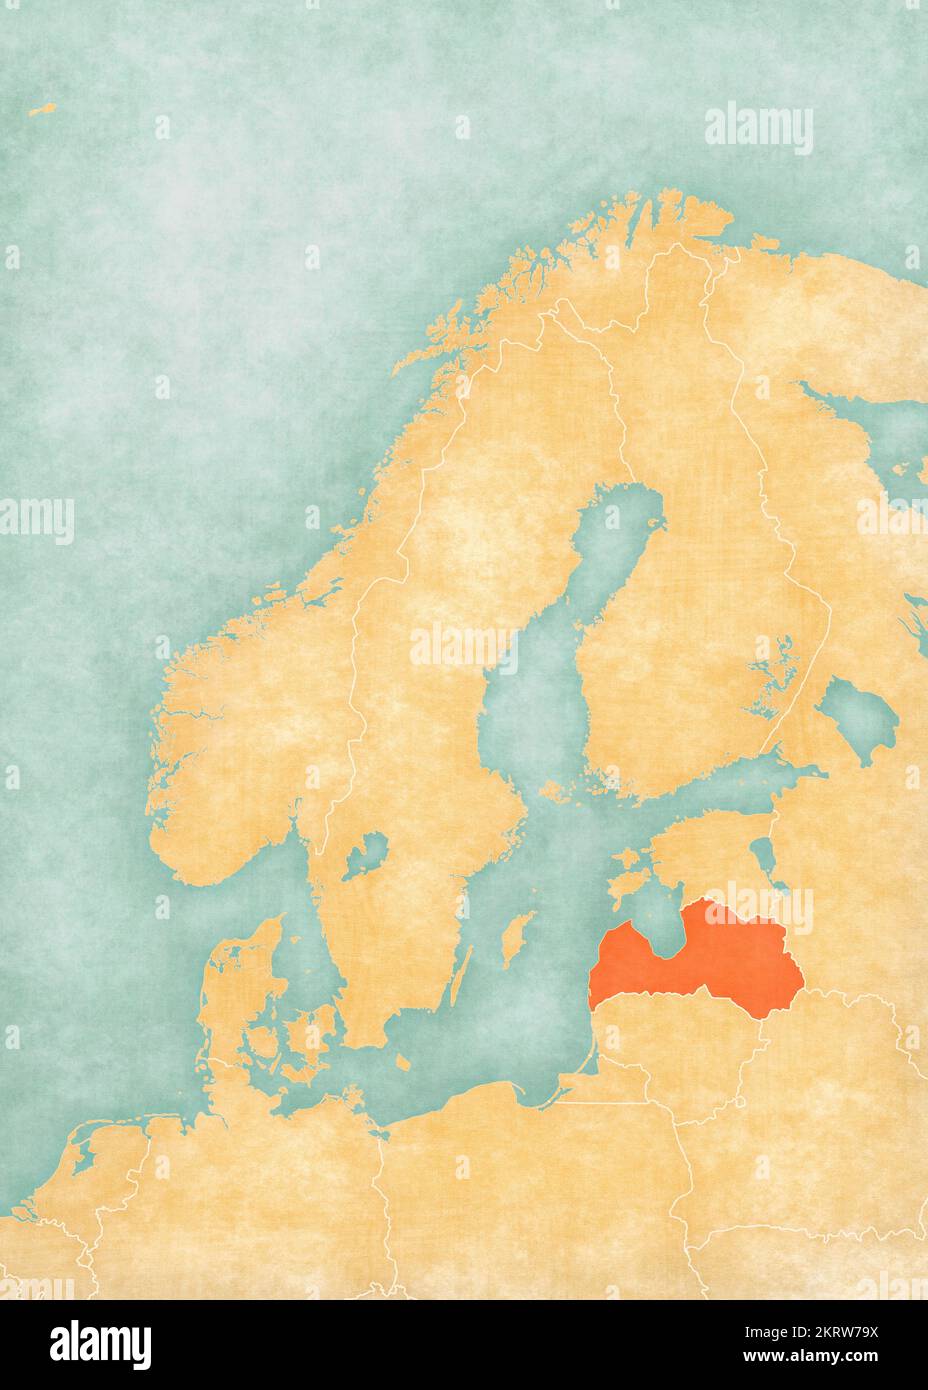 Lettonia sulla mappa della Scandinavia in morbido grunge e stile vintage, come carta vecchia con pittura ad acquerello. Foto Stock